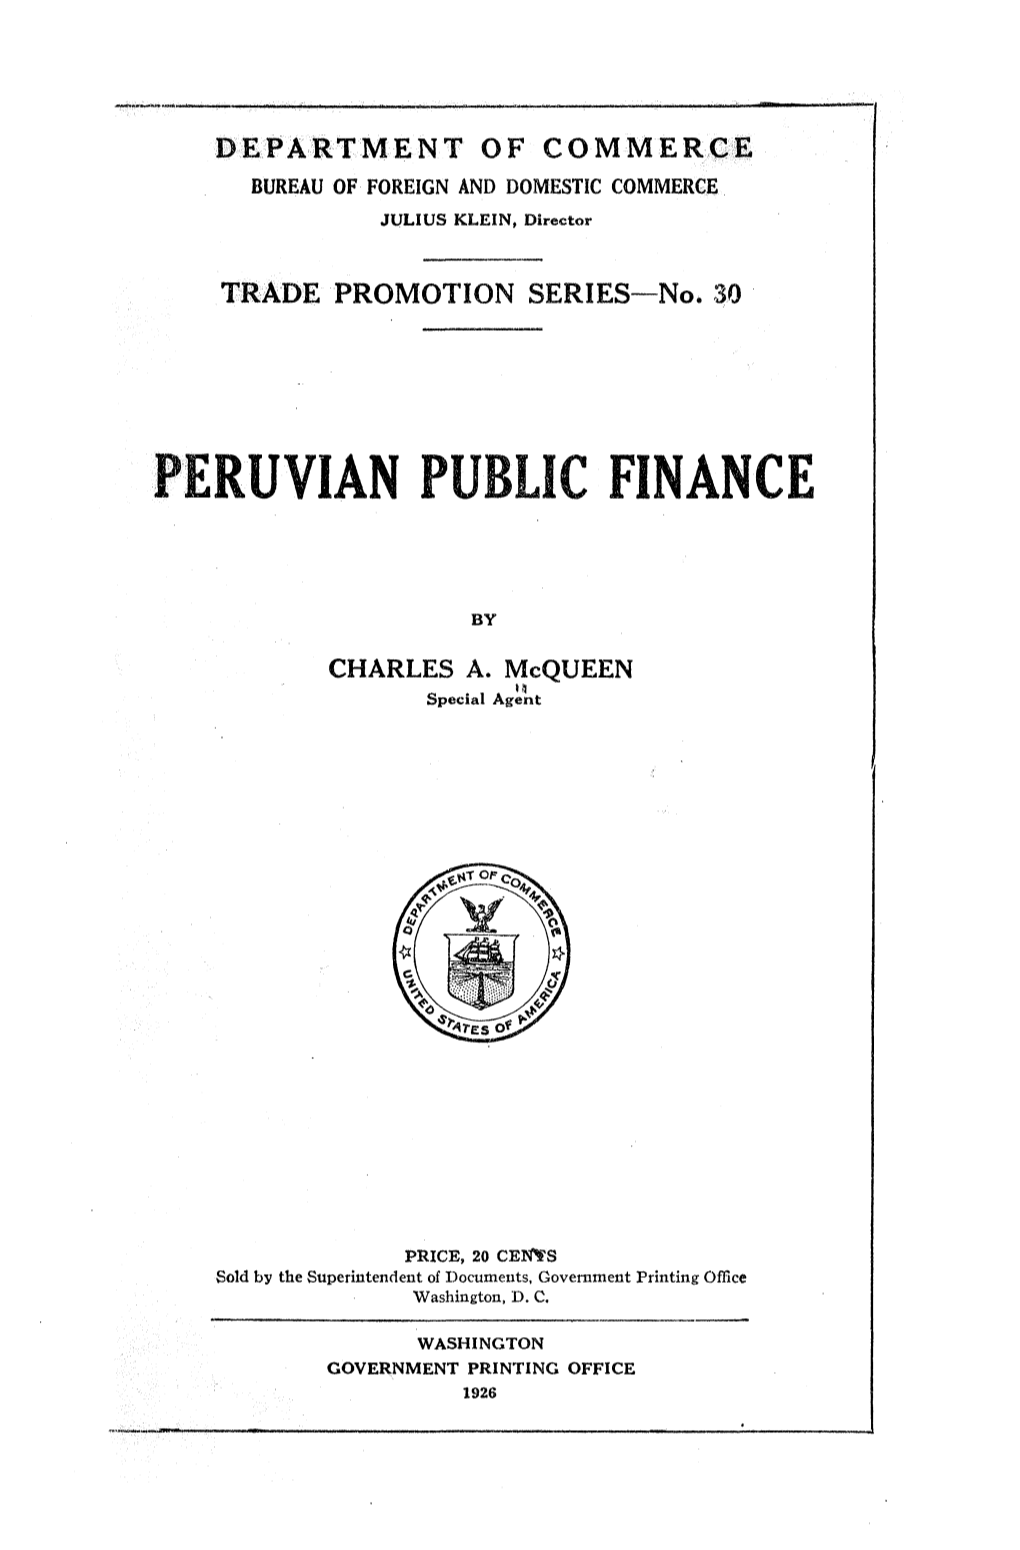 Peruvian Public Finance